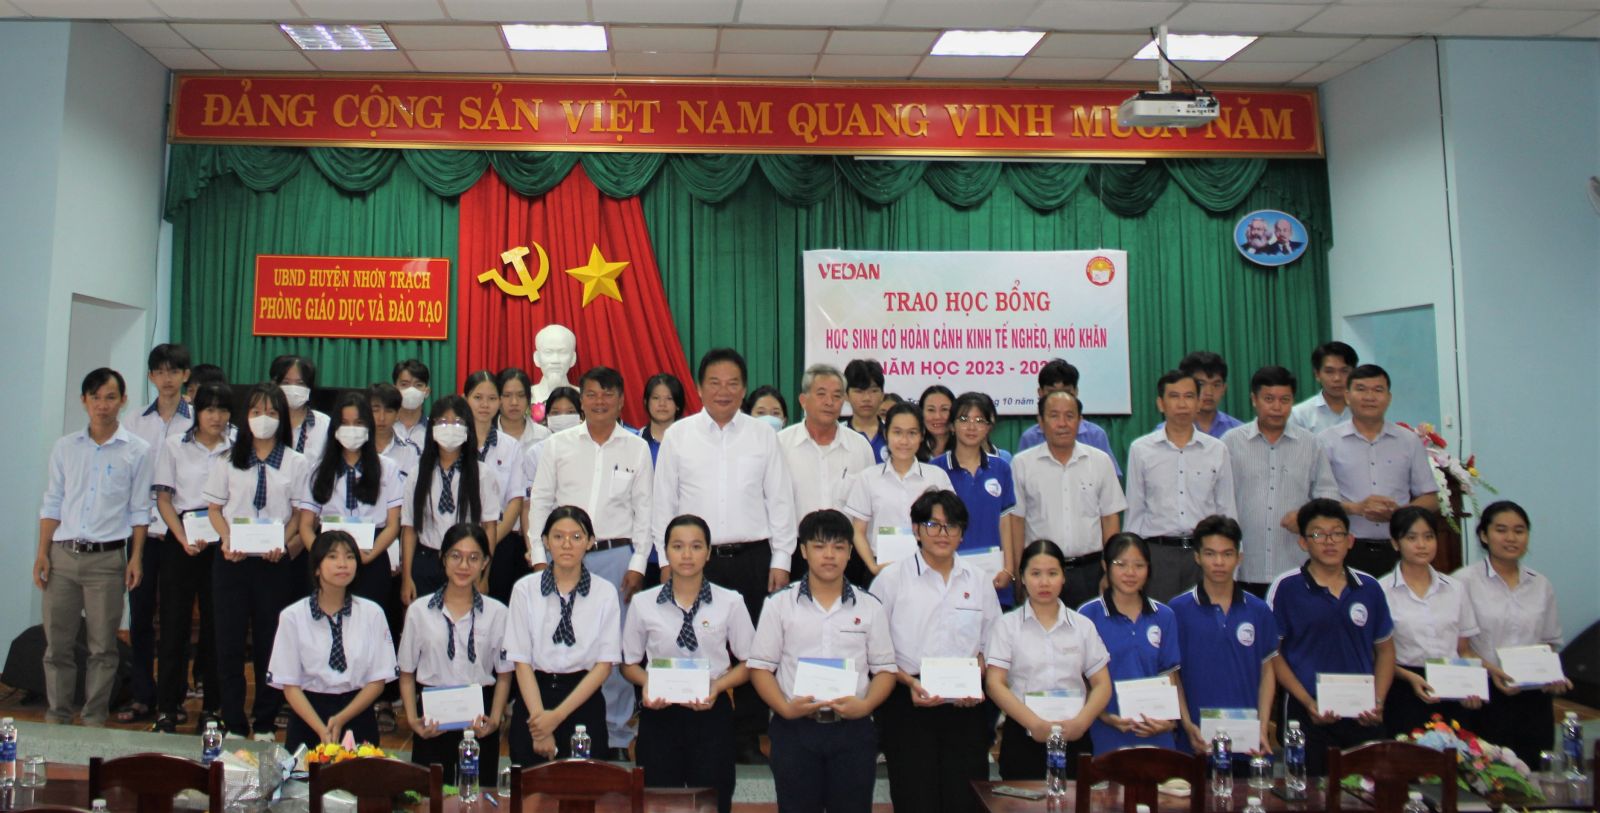 Ông Hwang Fa Jane - Chuyên viên thâm niên cao cấp Vedan Việt Nam trao học bổng cho các em học sinh có hoàn cảnh kinh tế nghèo khó khăn tại huyện Nhơn Trạch tỉnh Đồng Nai